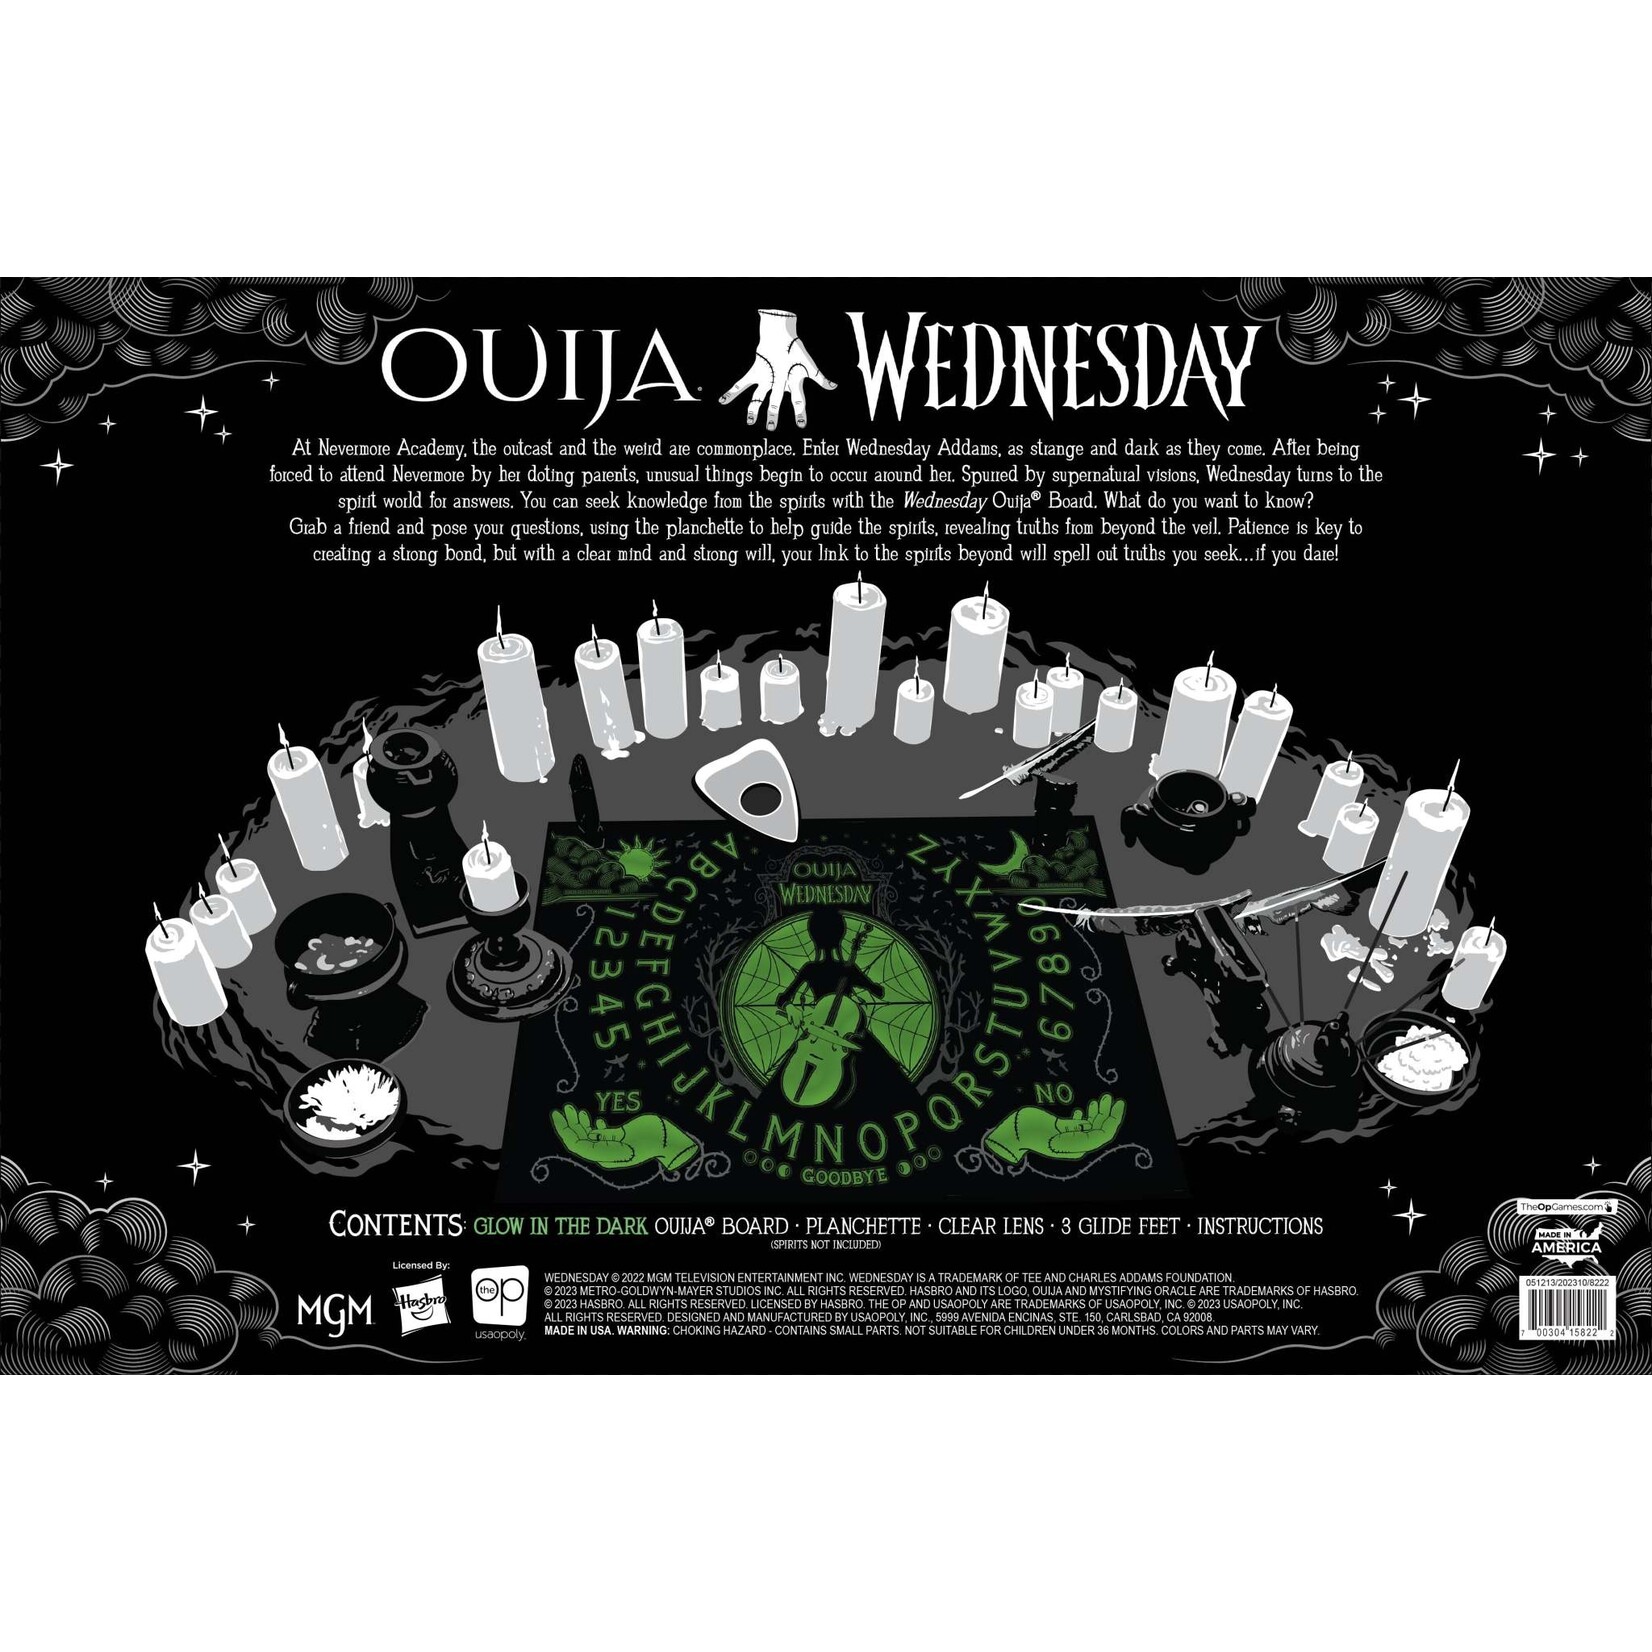 The Op Ouija: Wednesday